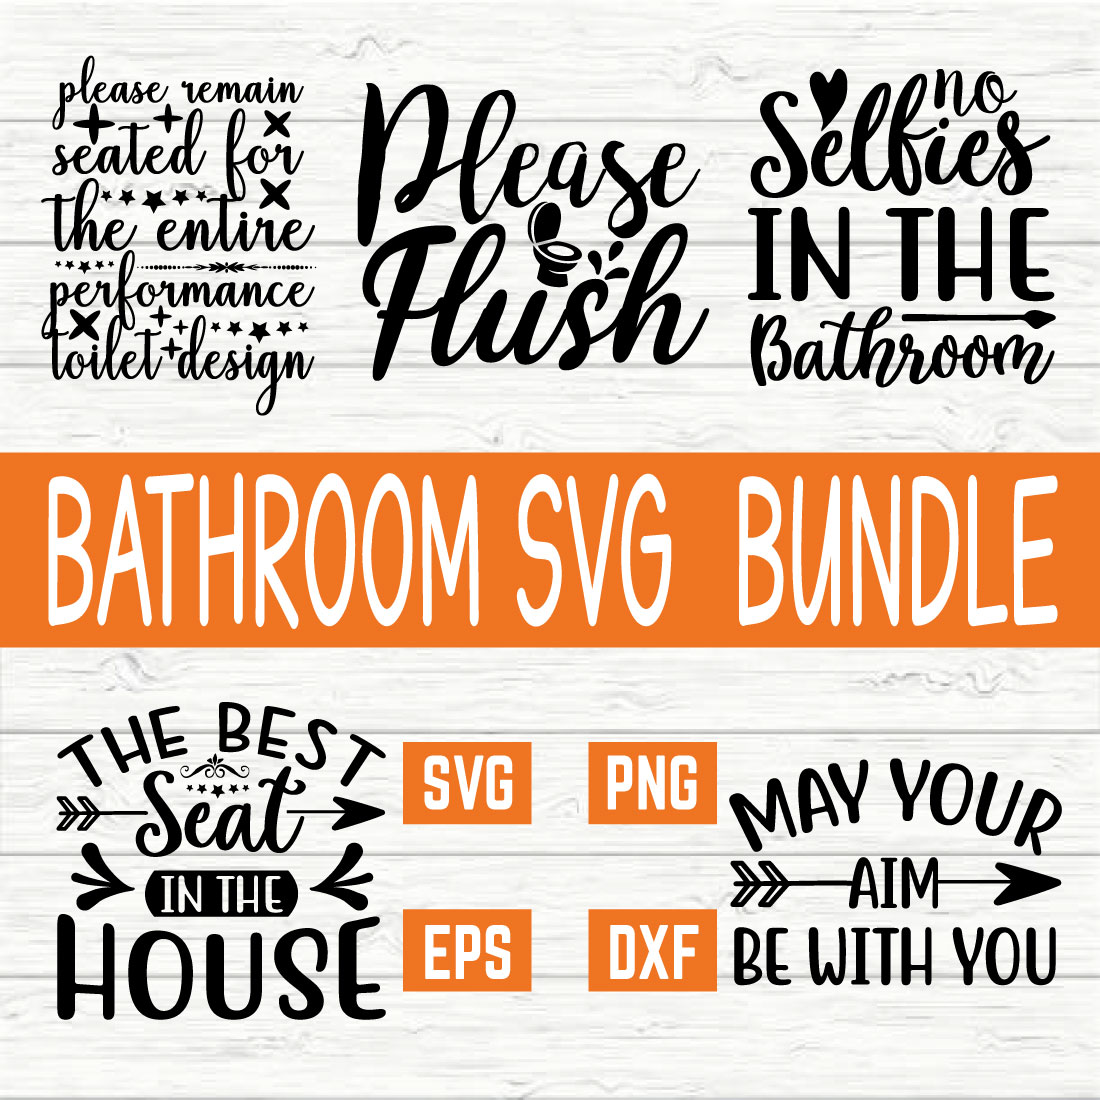 Bathroom Typography Design Bundle vol 6 cover image.